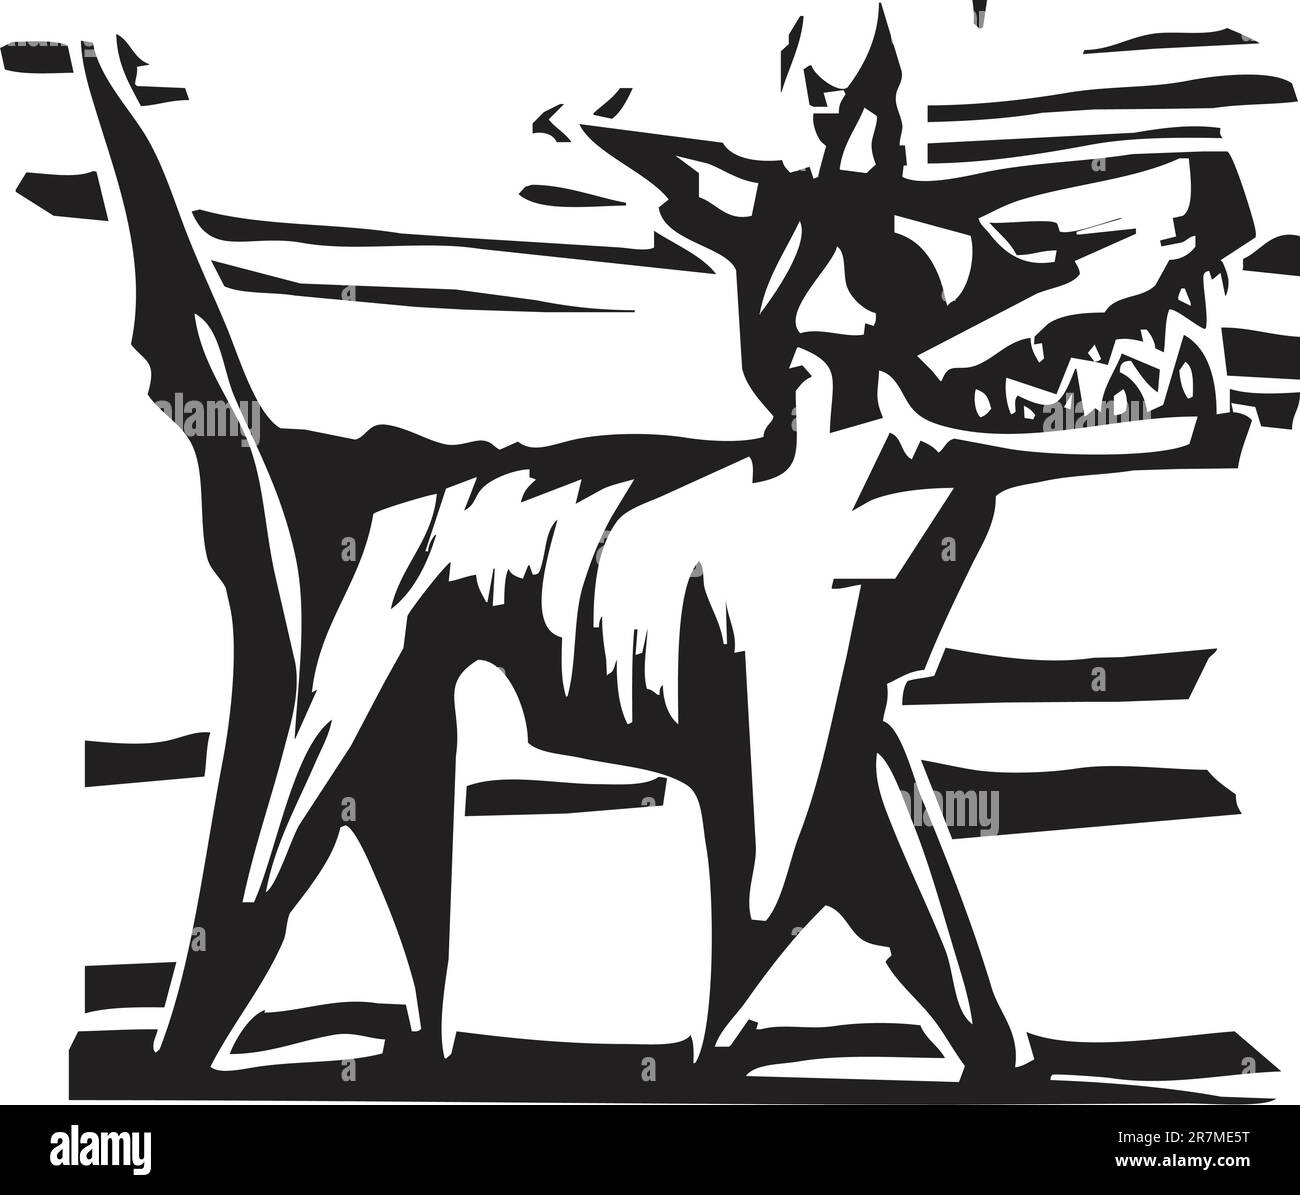 Semplice immagine del cane il rendering in una xilografia style Illustrazione Vettoriale